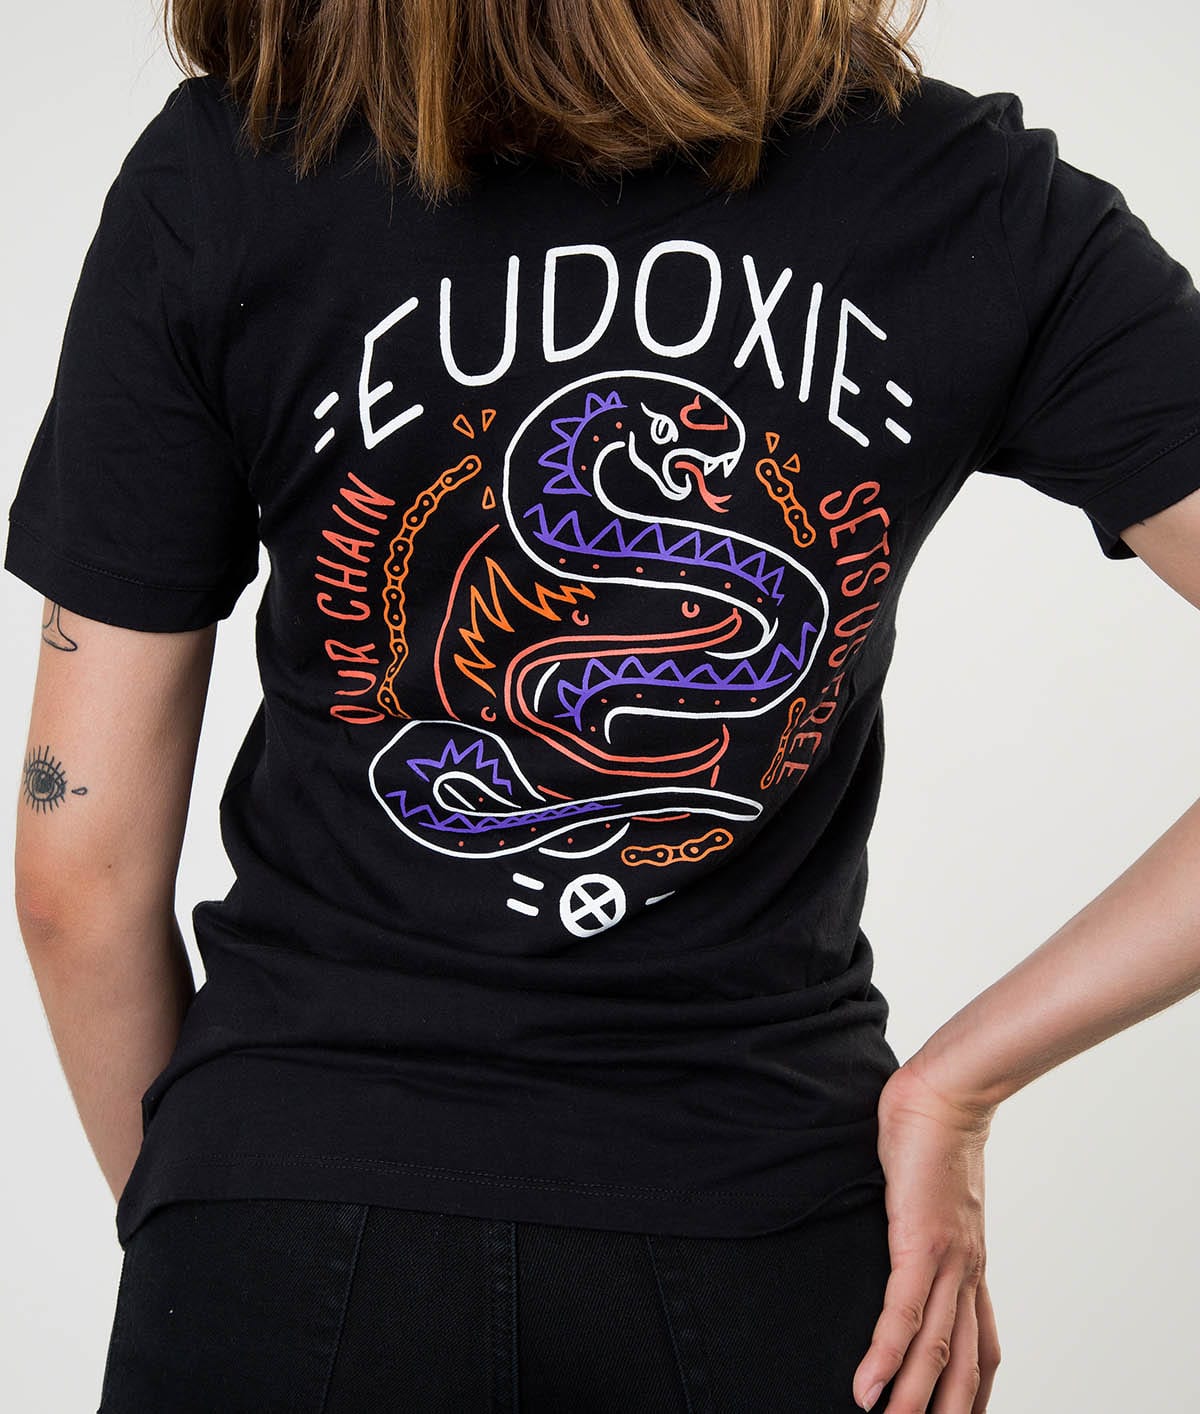 Eudoxie Black Masha T-Shirt - Medium - Bild 4